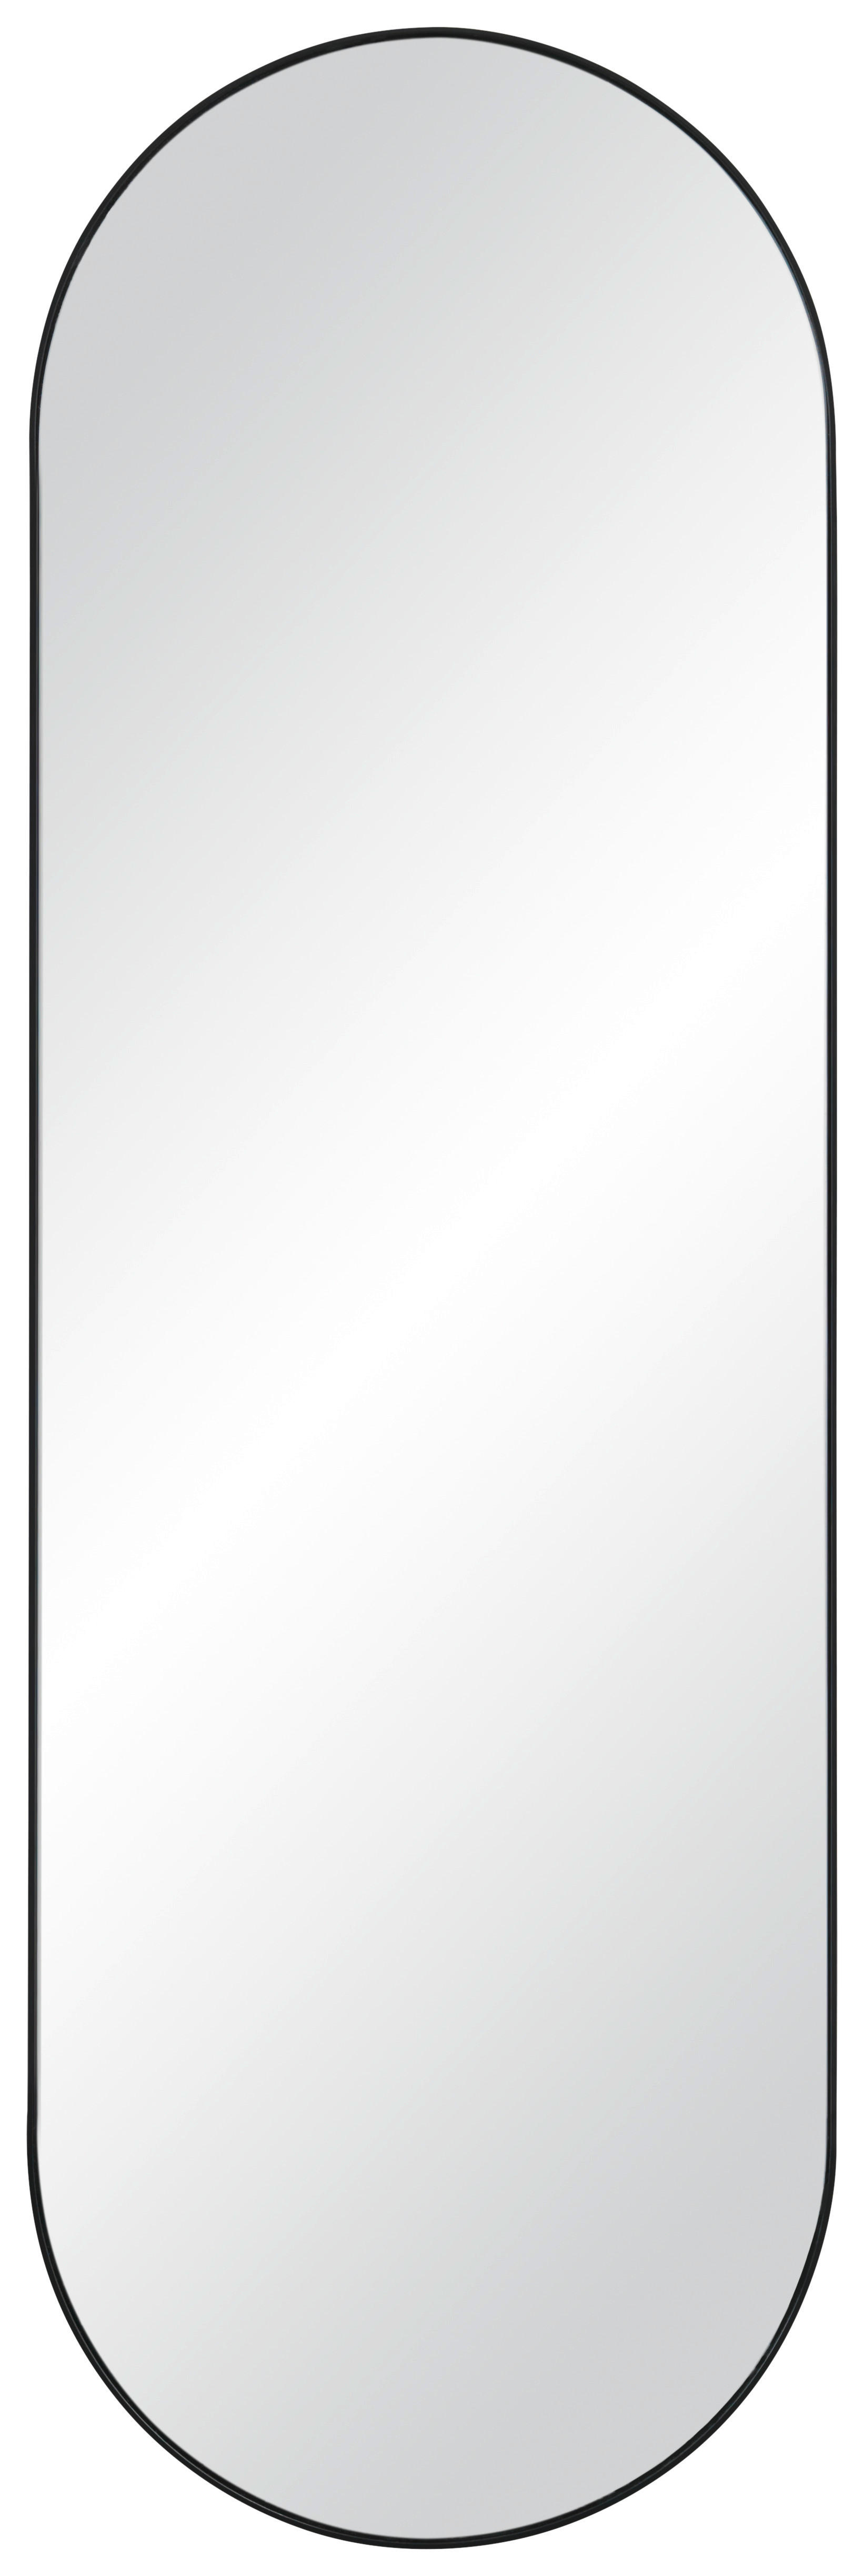 STENSKO OGLEDALO, 37,5/117/2,5 cm kovina, steklo  - črna, Design, kovina/steklo (37,5/117/2,5cm) - Xora